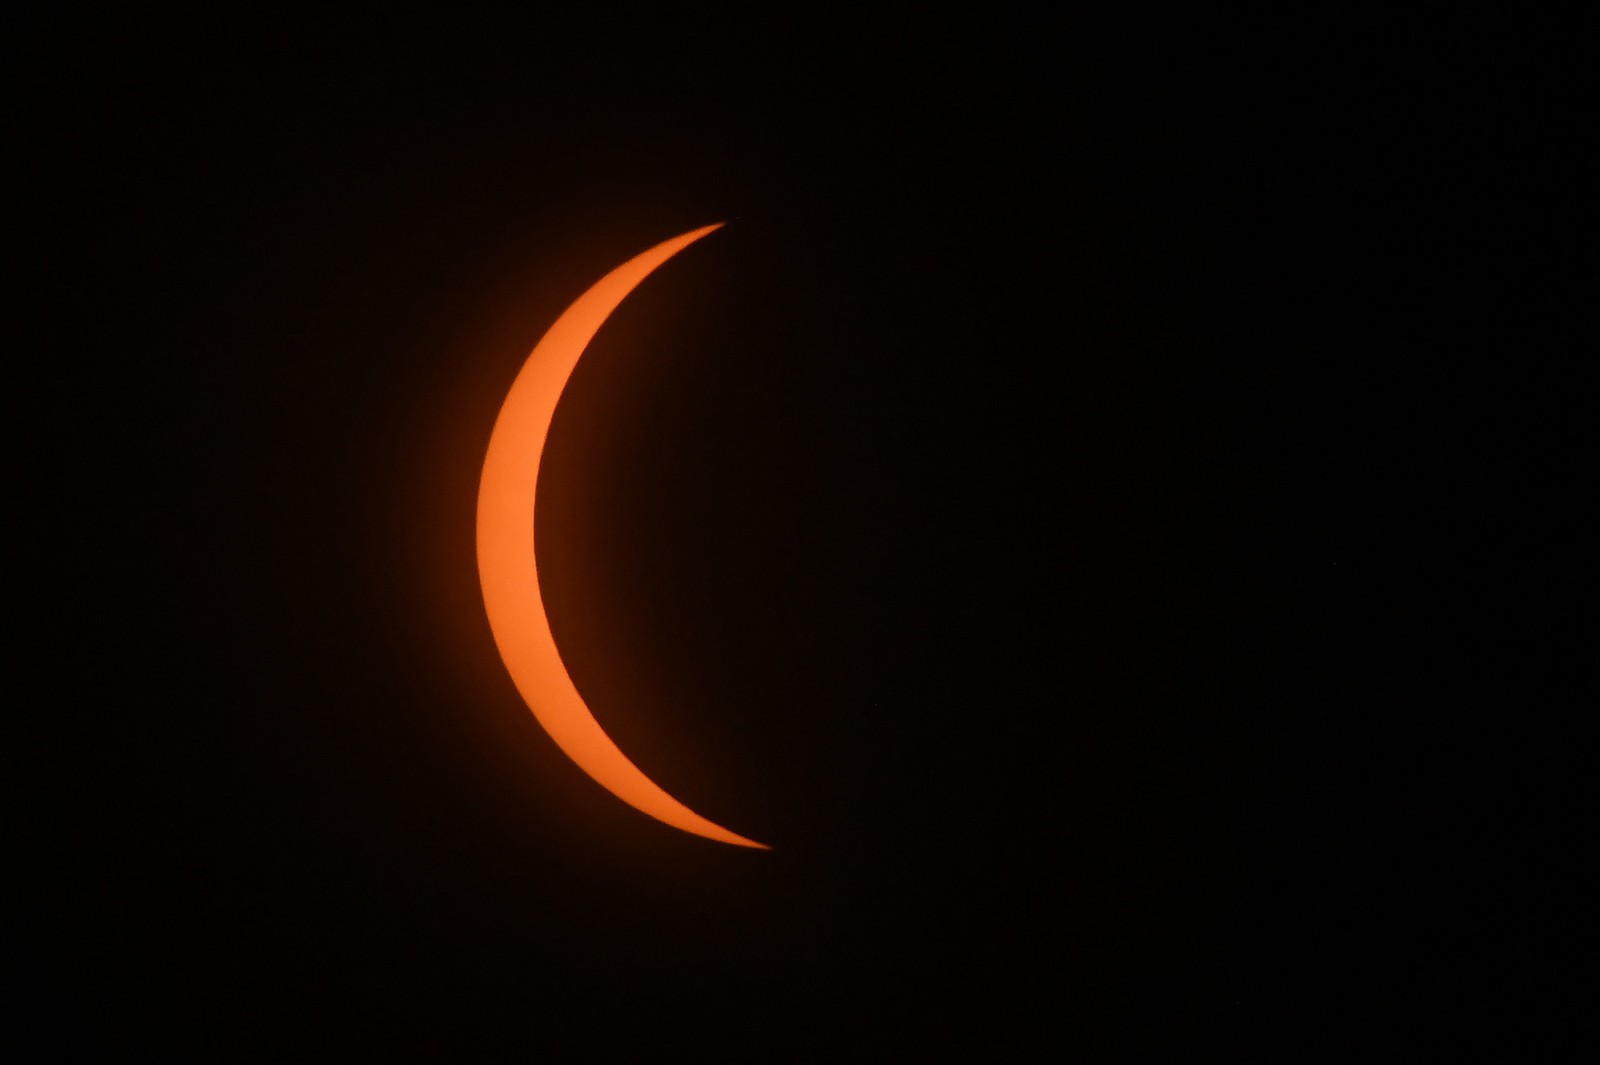 Confira os primeiros momentos de um eclipse solar total. A lua começa a eclipsar o sol durante o eclipse solar total em Mazatlan, estado de Sinaloa, México — Foto: ARIO VAZQUEZ / AFP